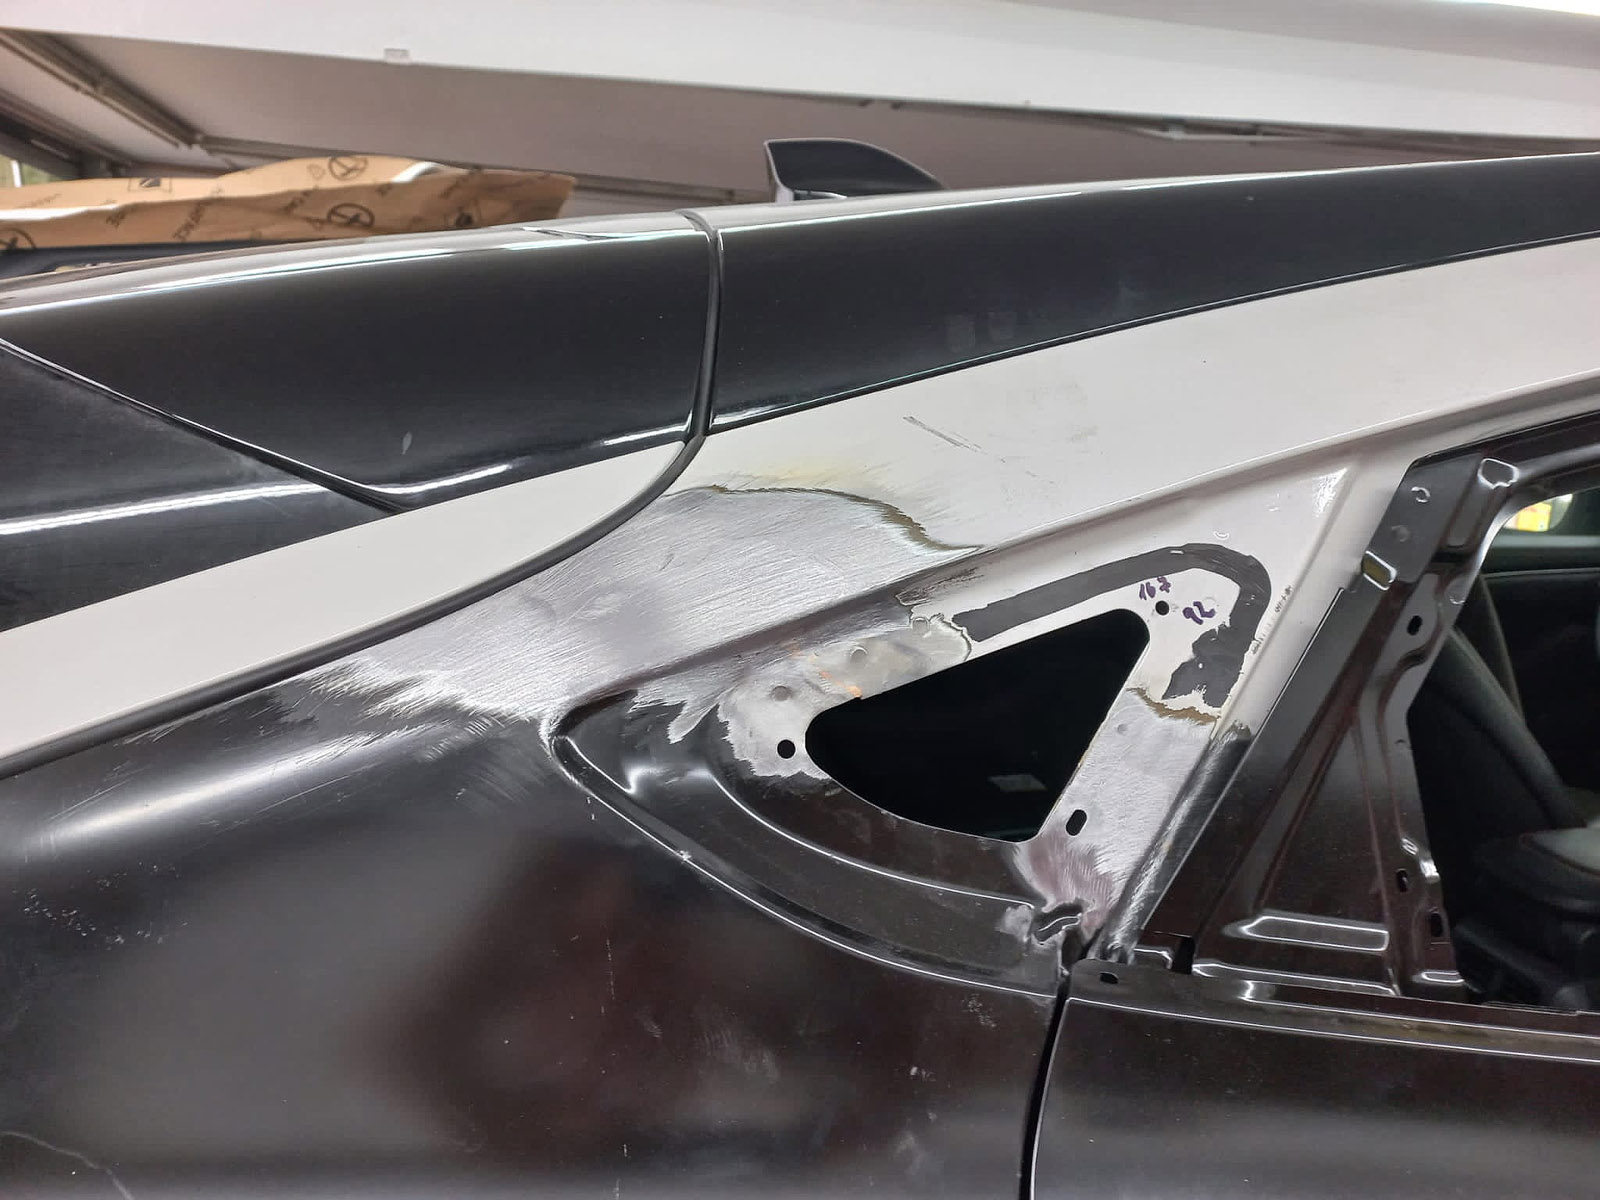 Instandsetzung eines Seitenschadens an einem Ford Mustang Mach-E.